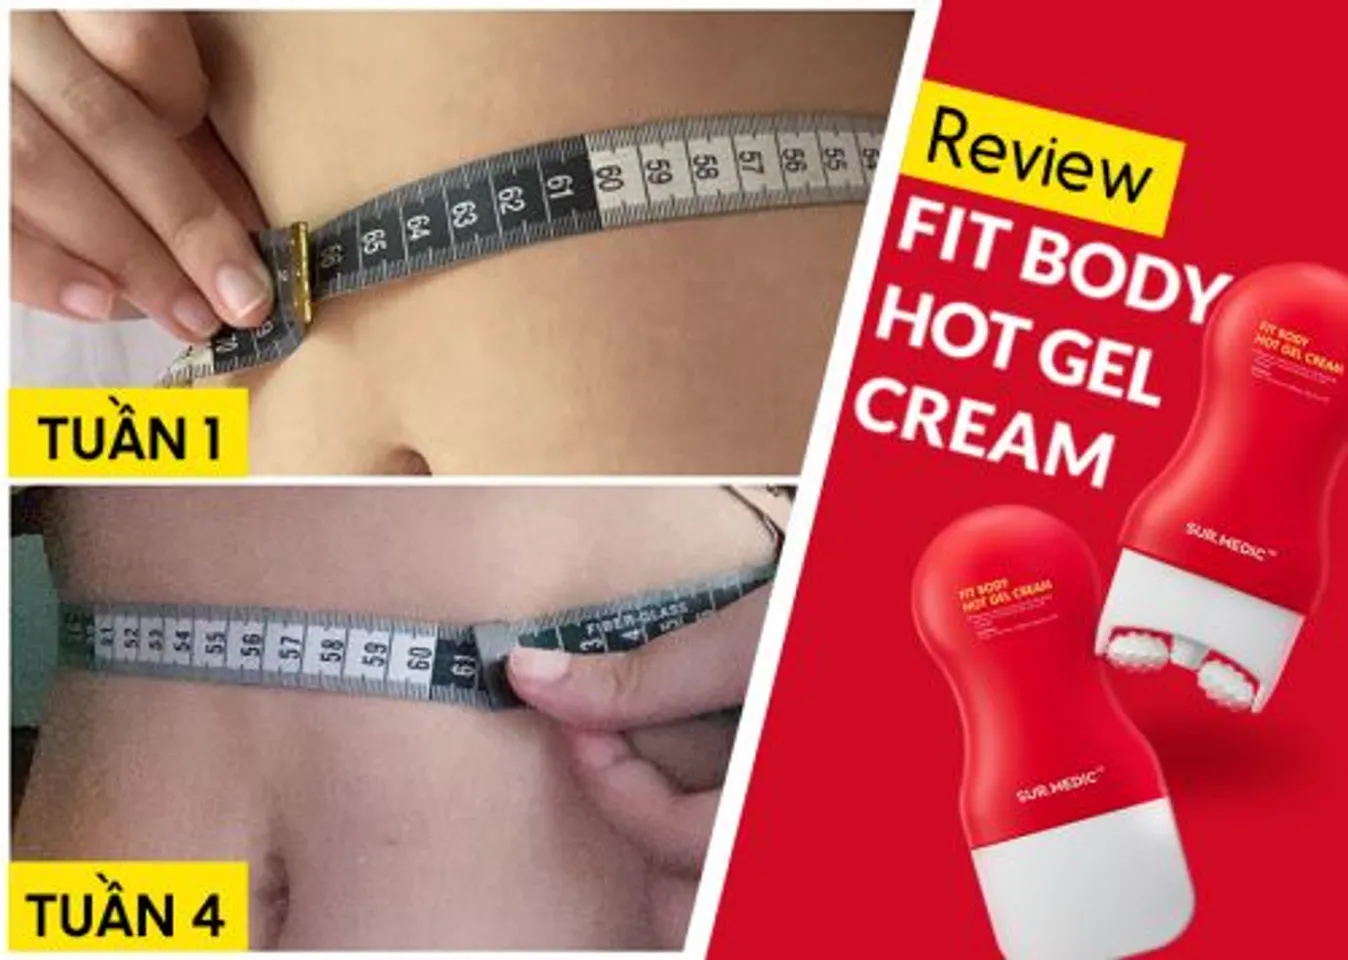 Thanh lăn Sur.Medic Fit Body Hot Gel Cream hỗ trợ lấy lại vóc dáng